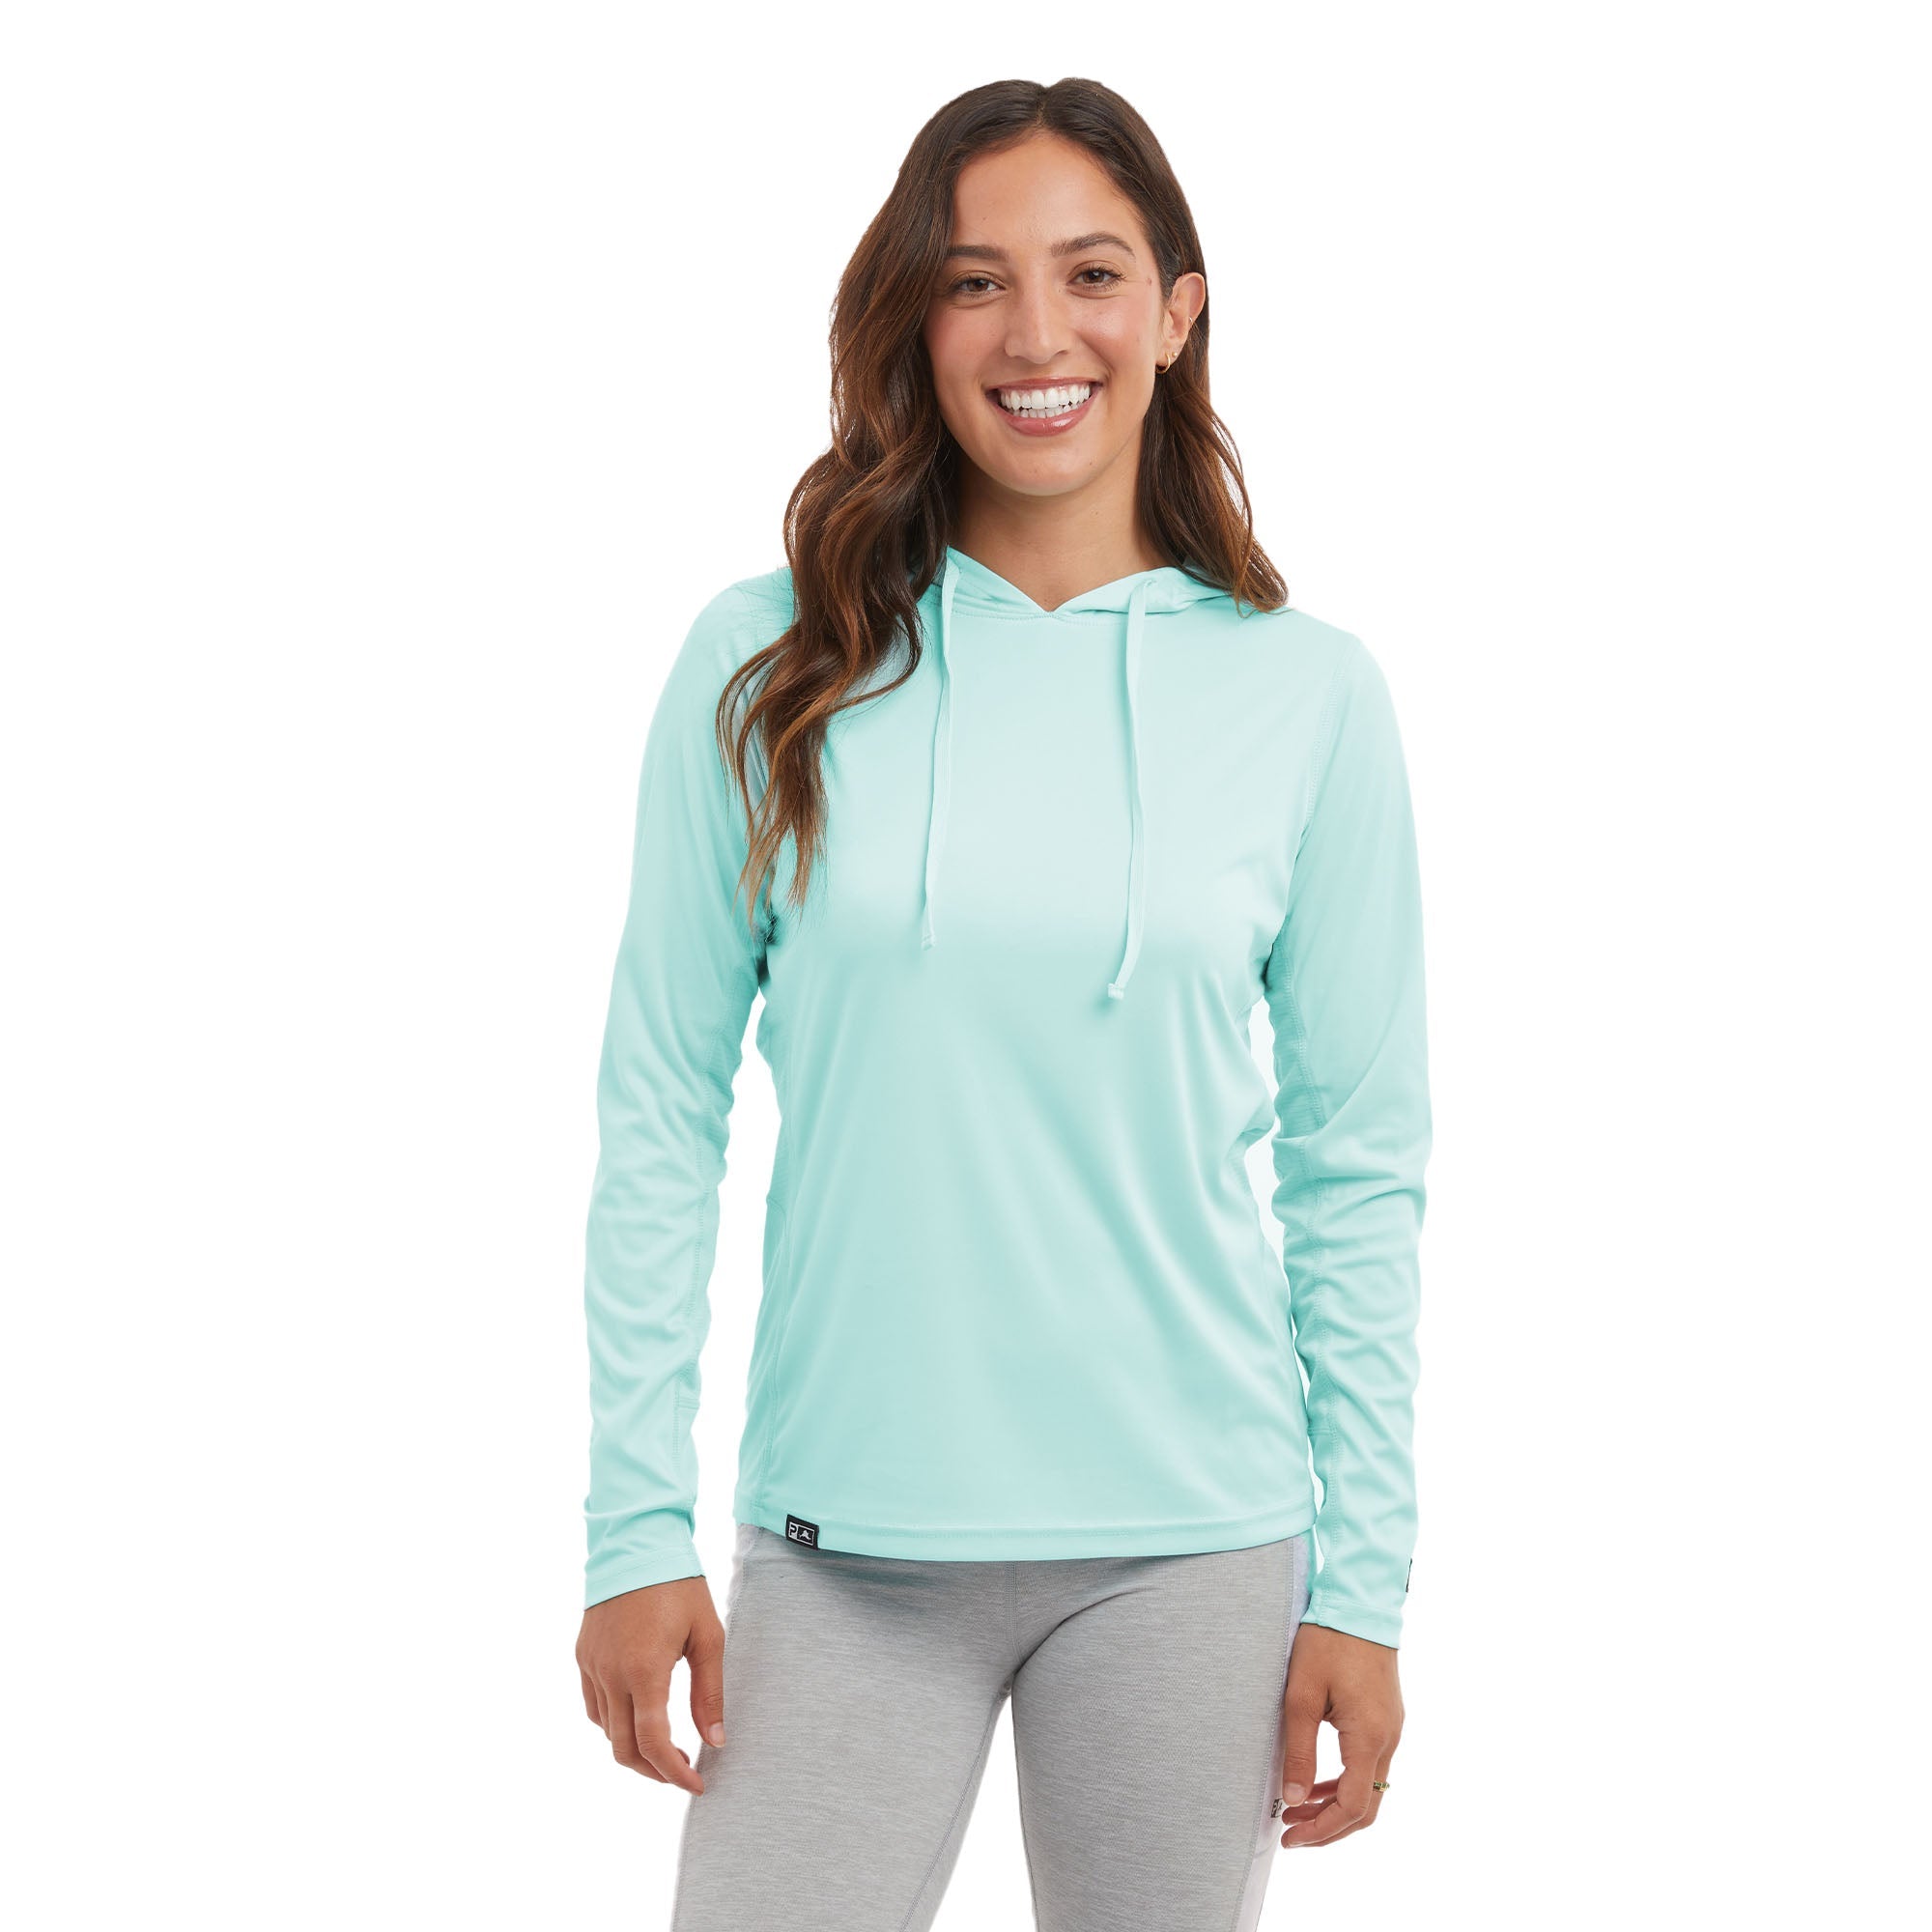 Pelagic Vaportech Women's Long Sleeve Hooded Fishing Shirt - Tropical Aqua